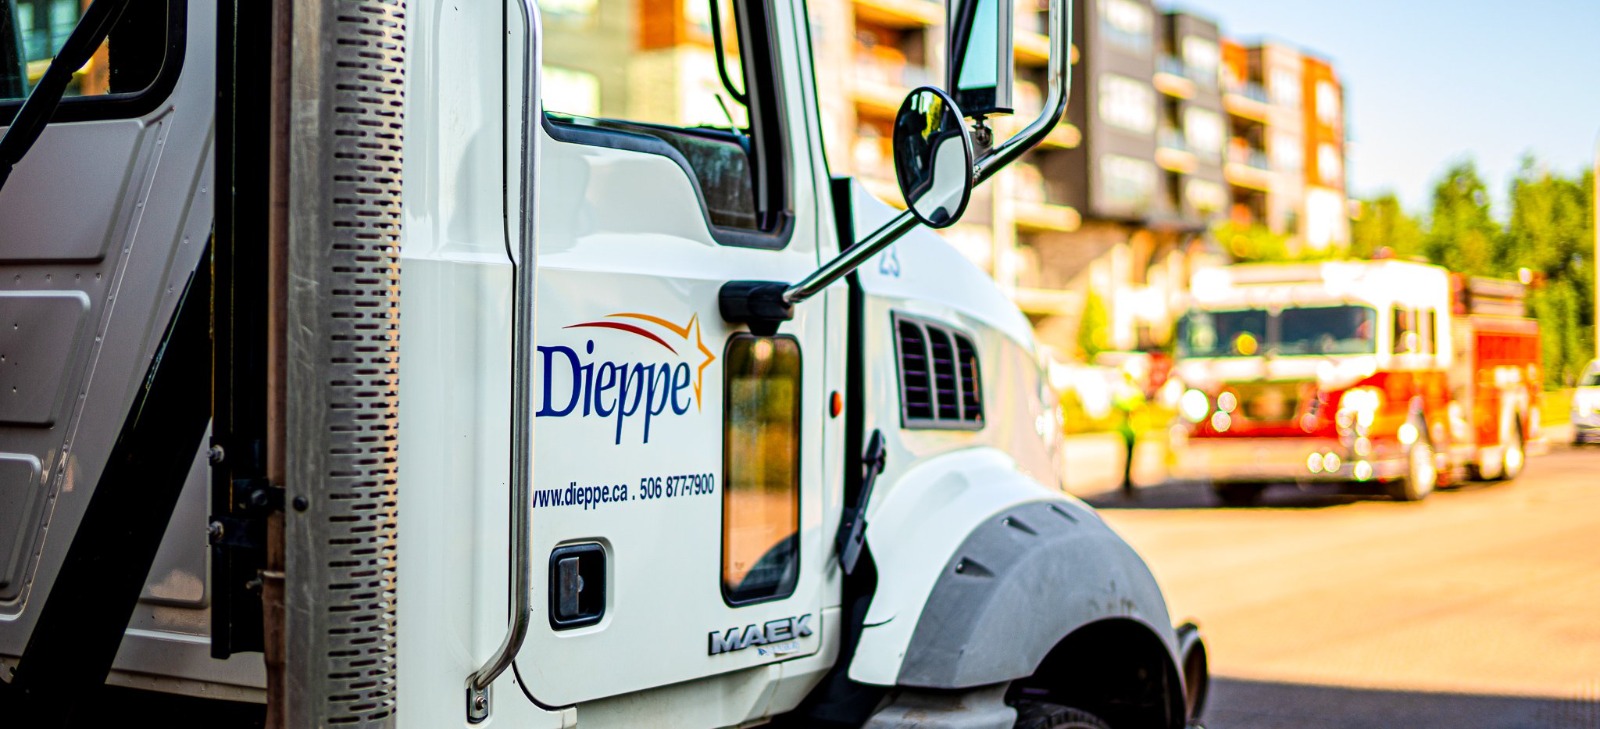 City of Dieppe truck